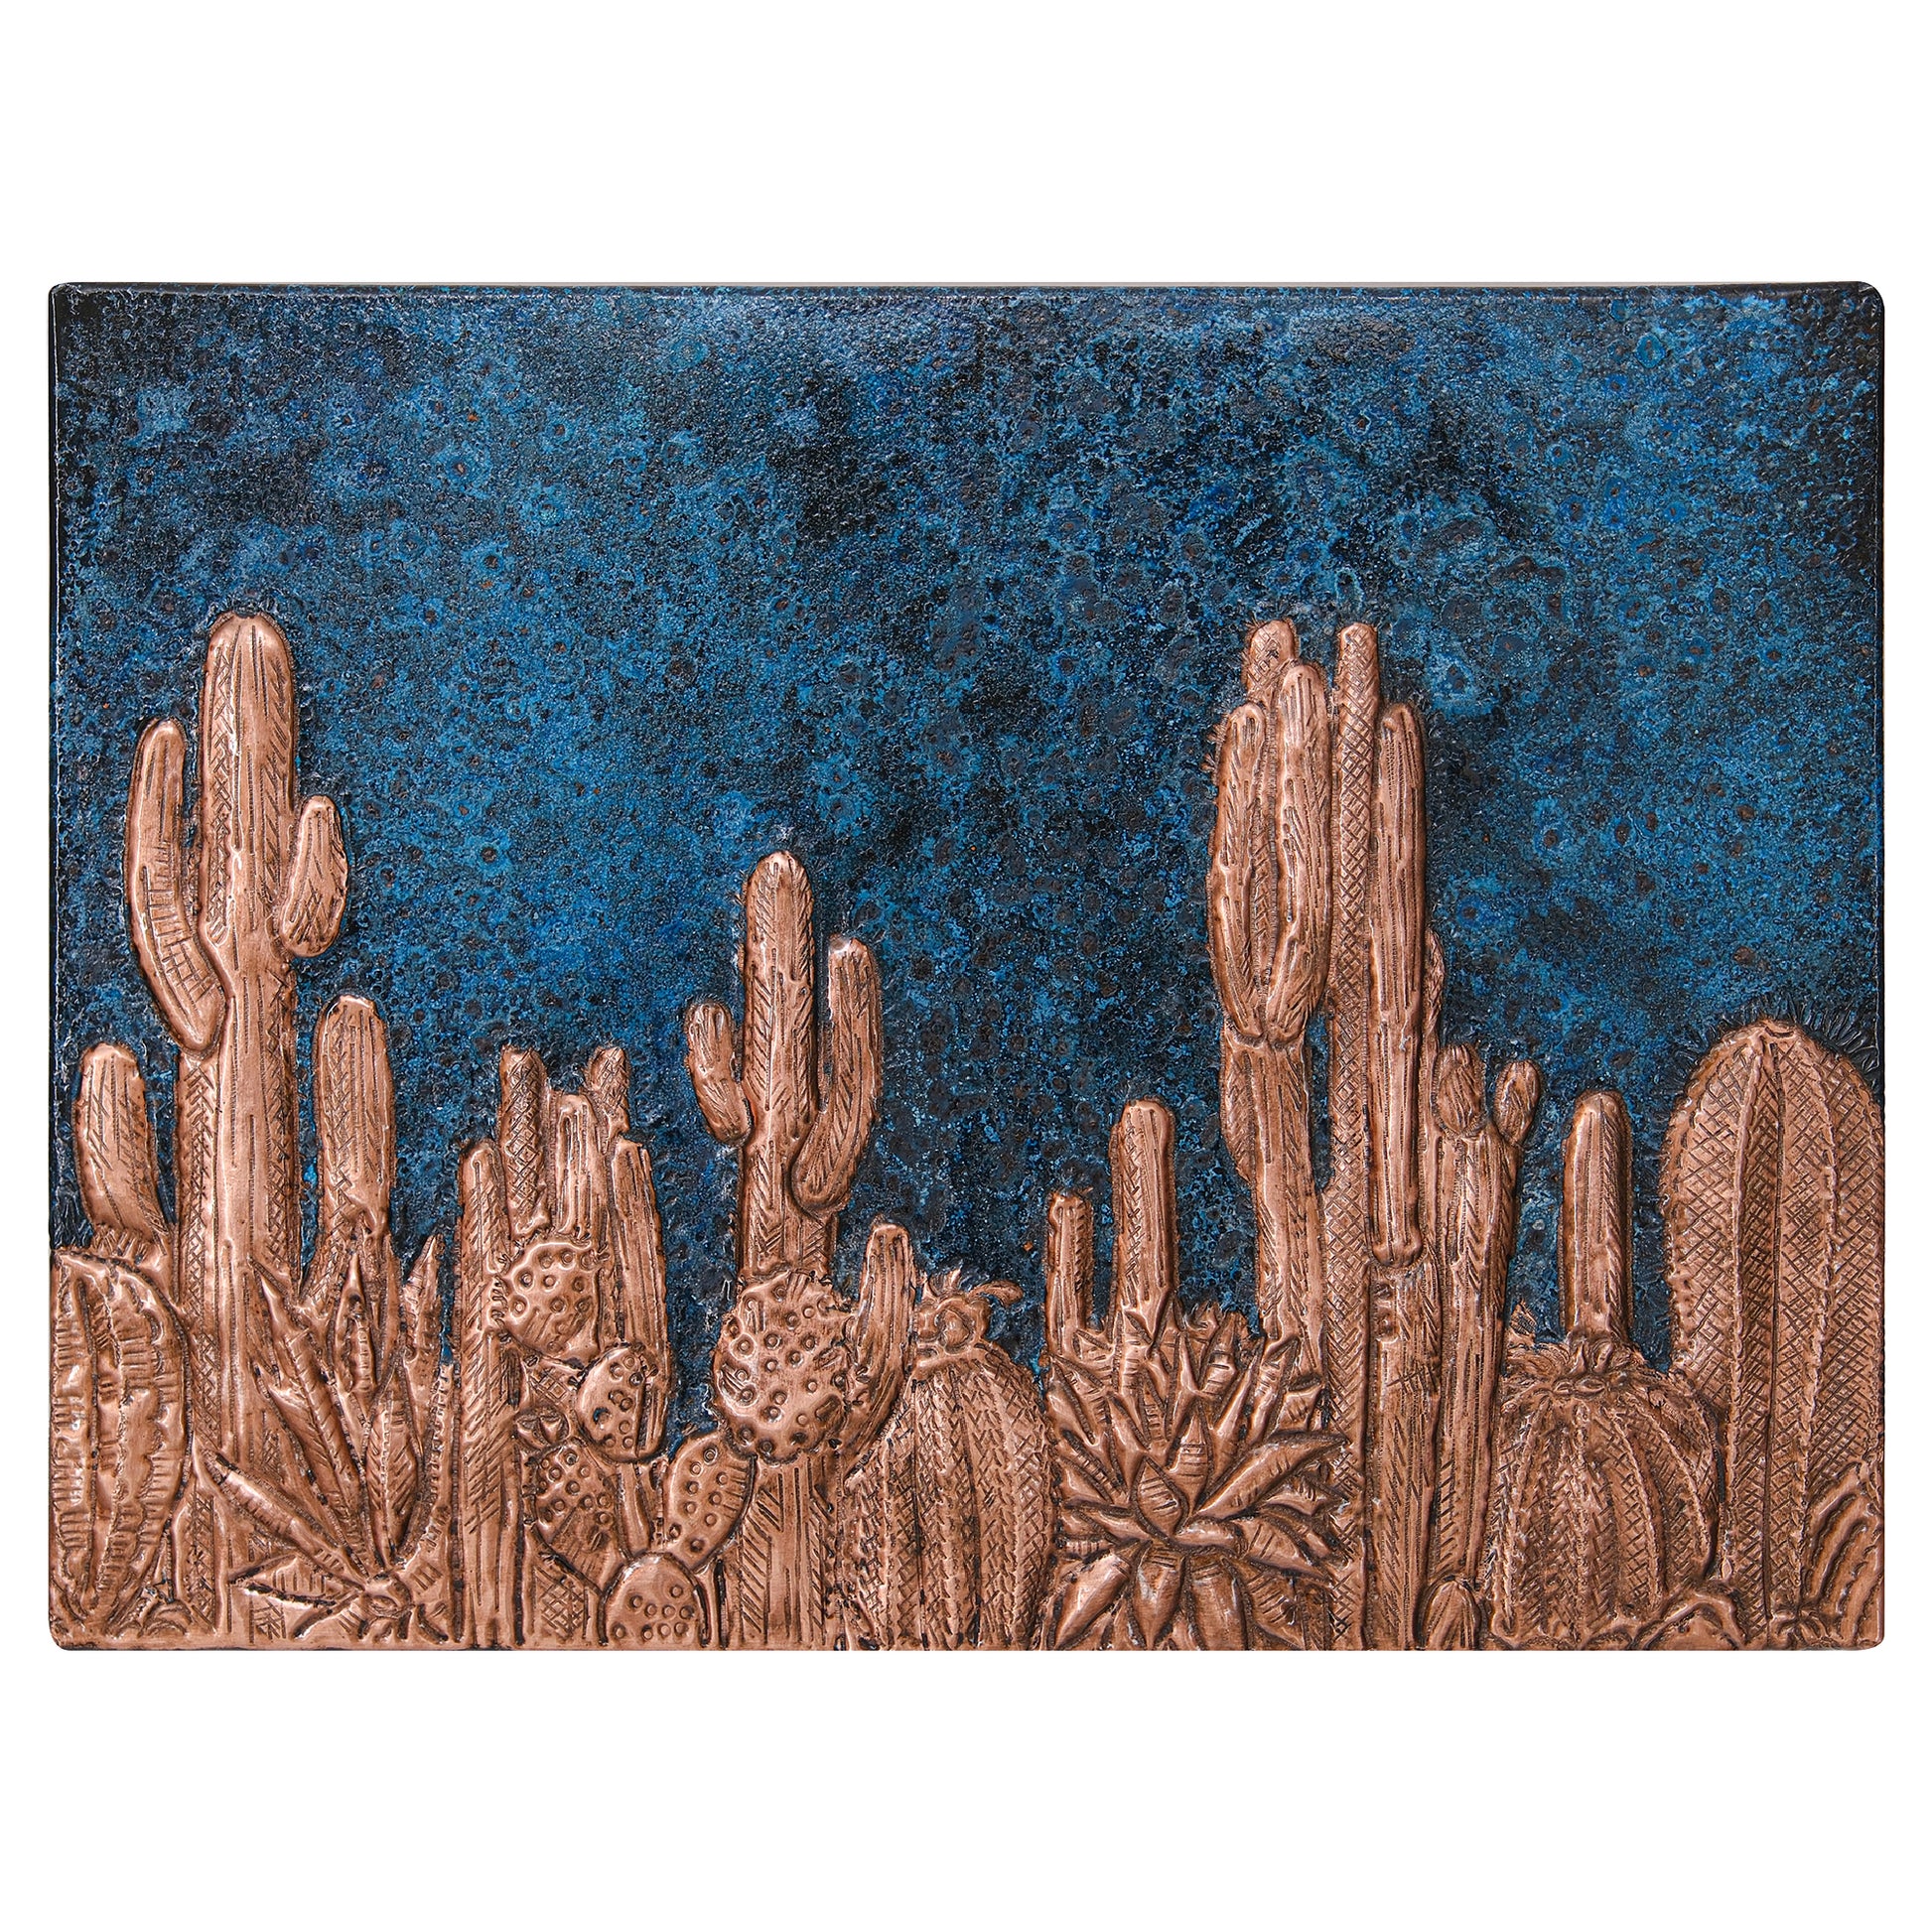 Metal Backsplash Tile Cactuses